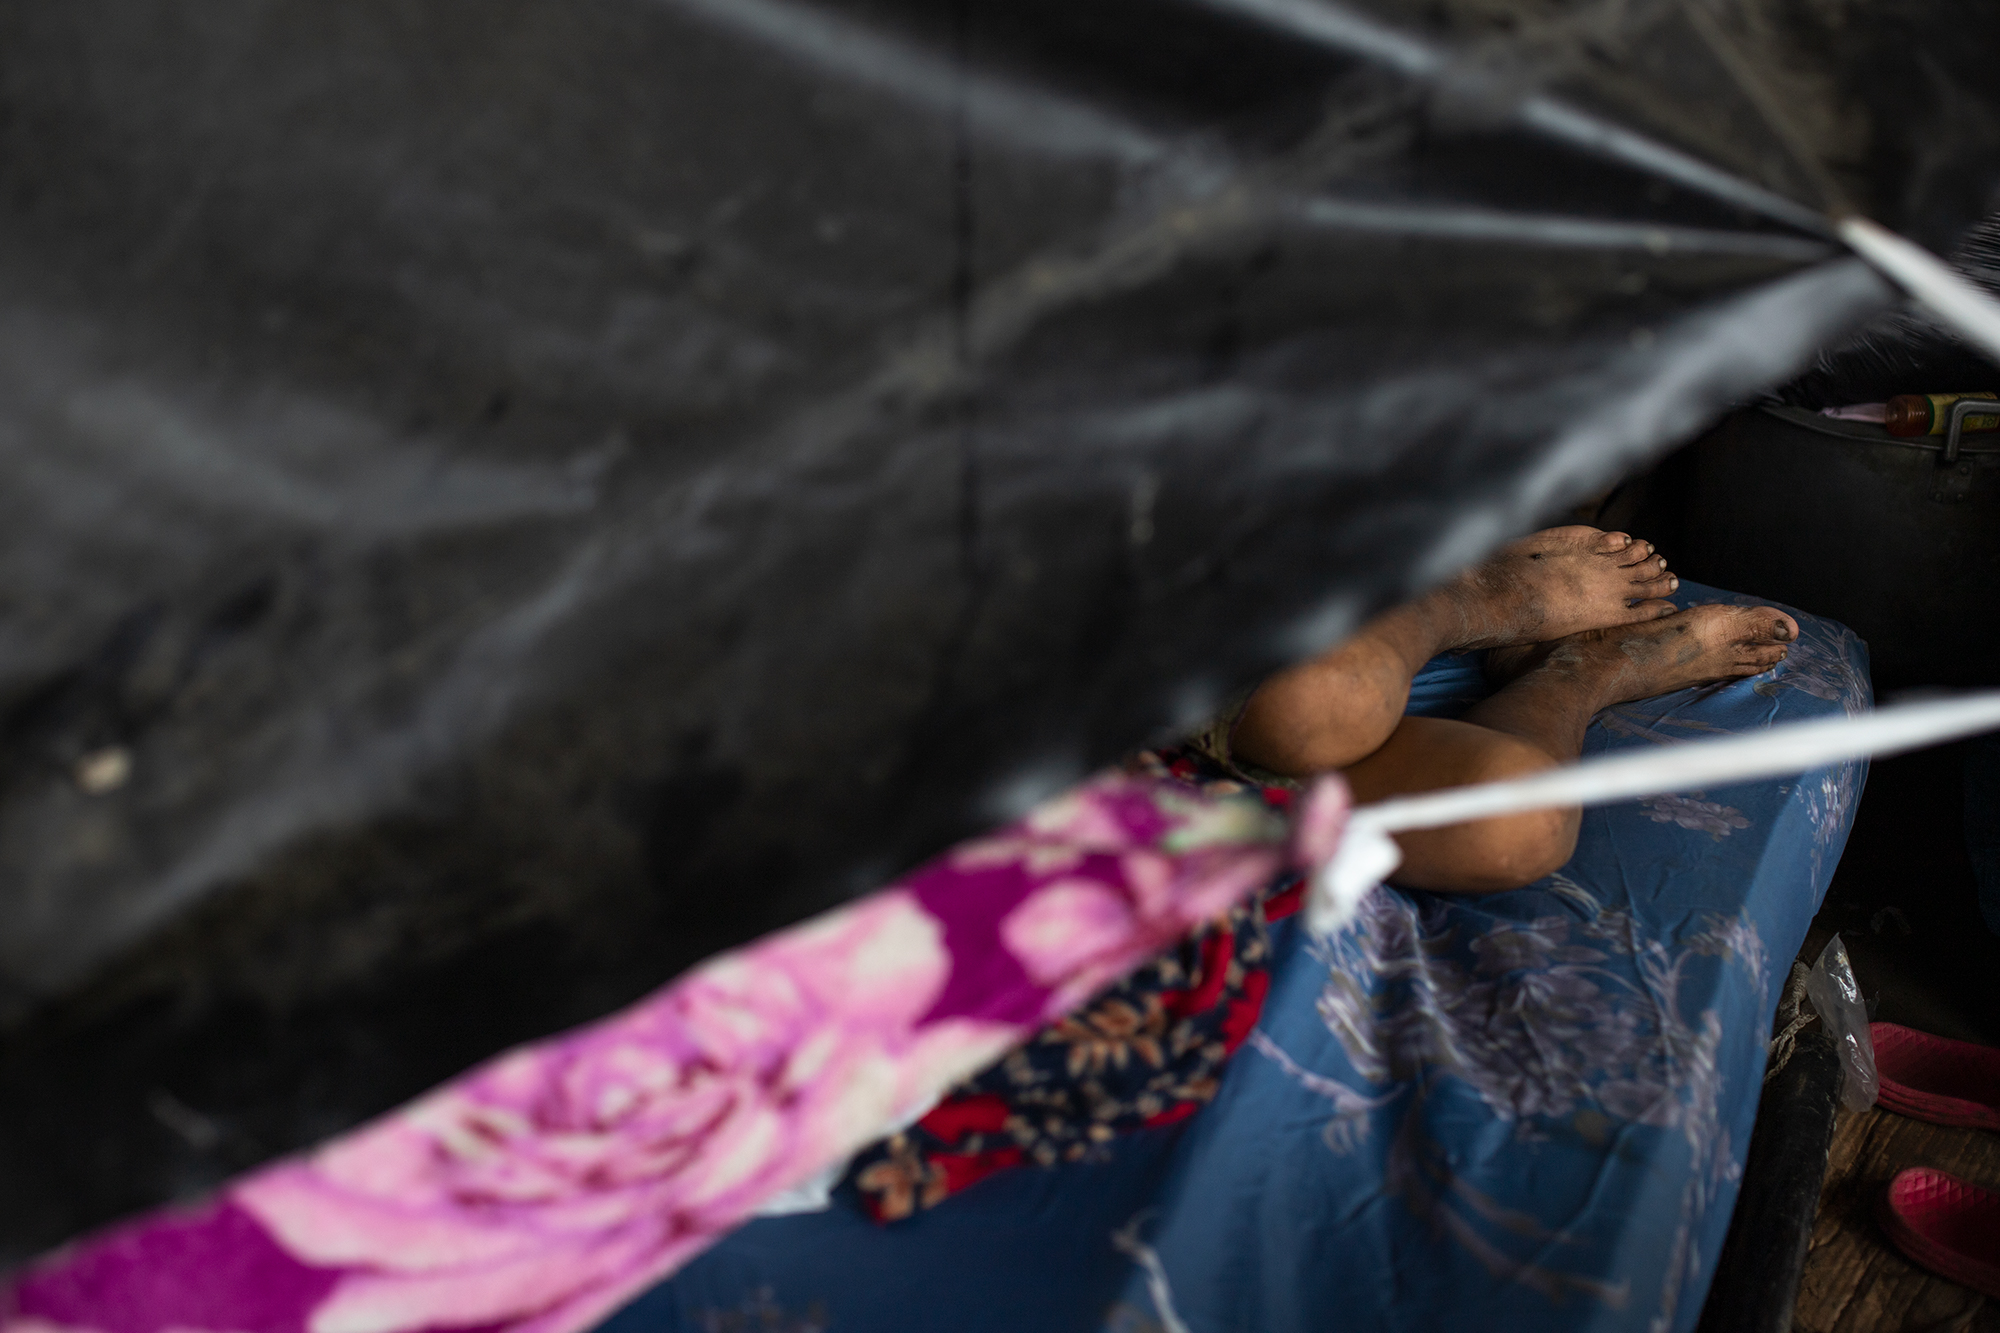 Una anciana damnificada descansa en un colchón dentro de un refugio construido con plásticos y trozos de madera en los bajos del puente frente al sector Chamelecón. San Pedro Sula, 21 de noviembre de 2020. Foto: Martín Cálix.